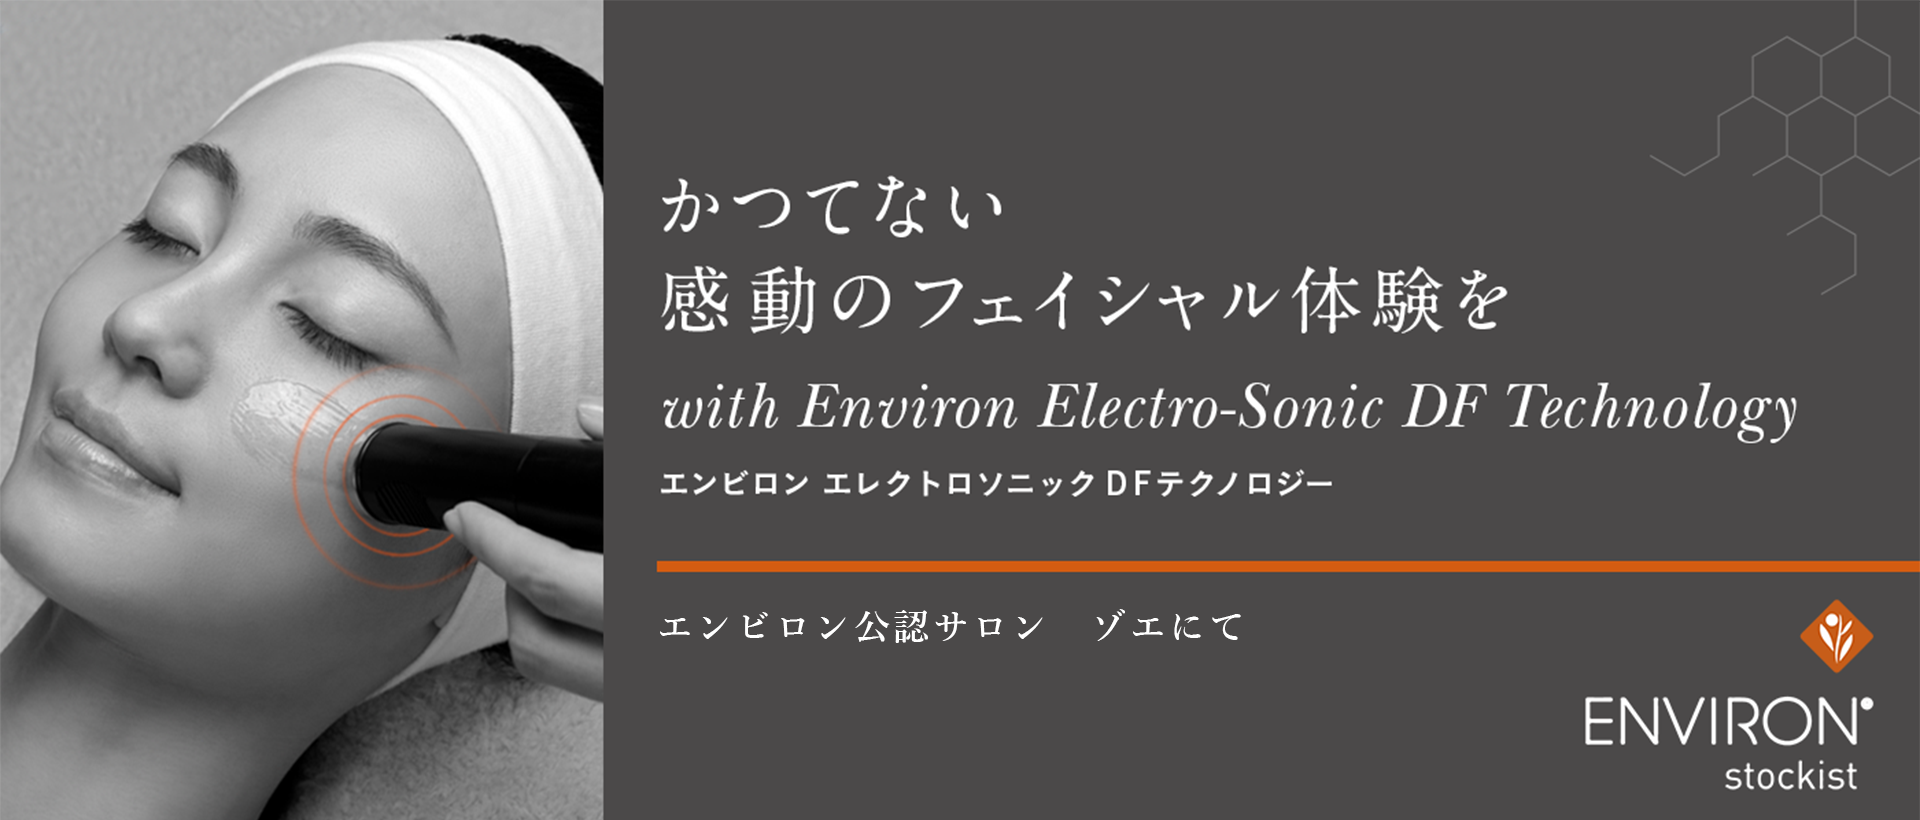 かつてない感動のフェイシャル体験をwith Environ Electro-Sonic DF Technology ENVIRON stockist